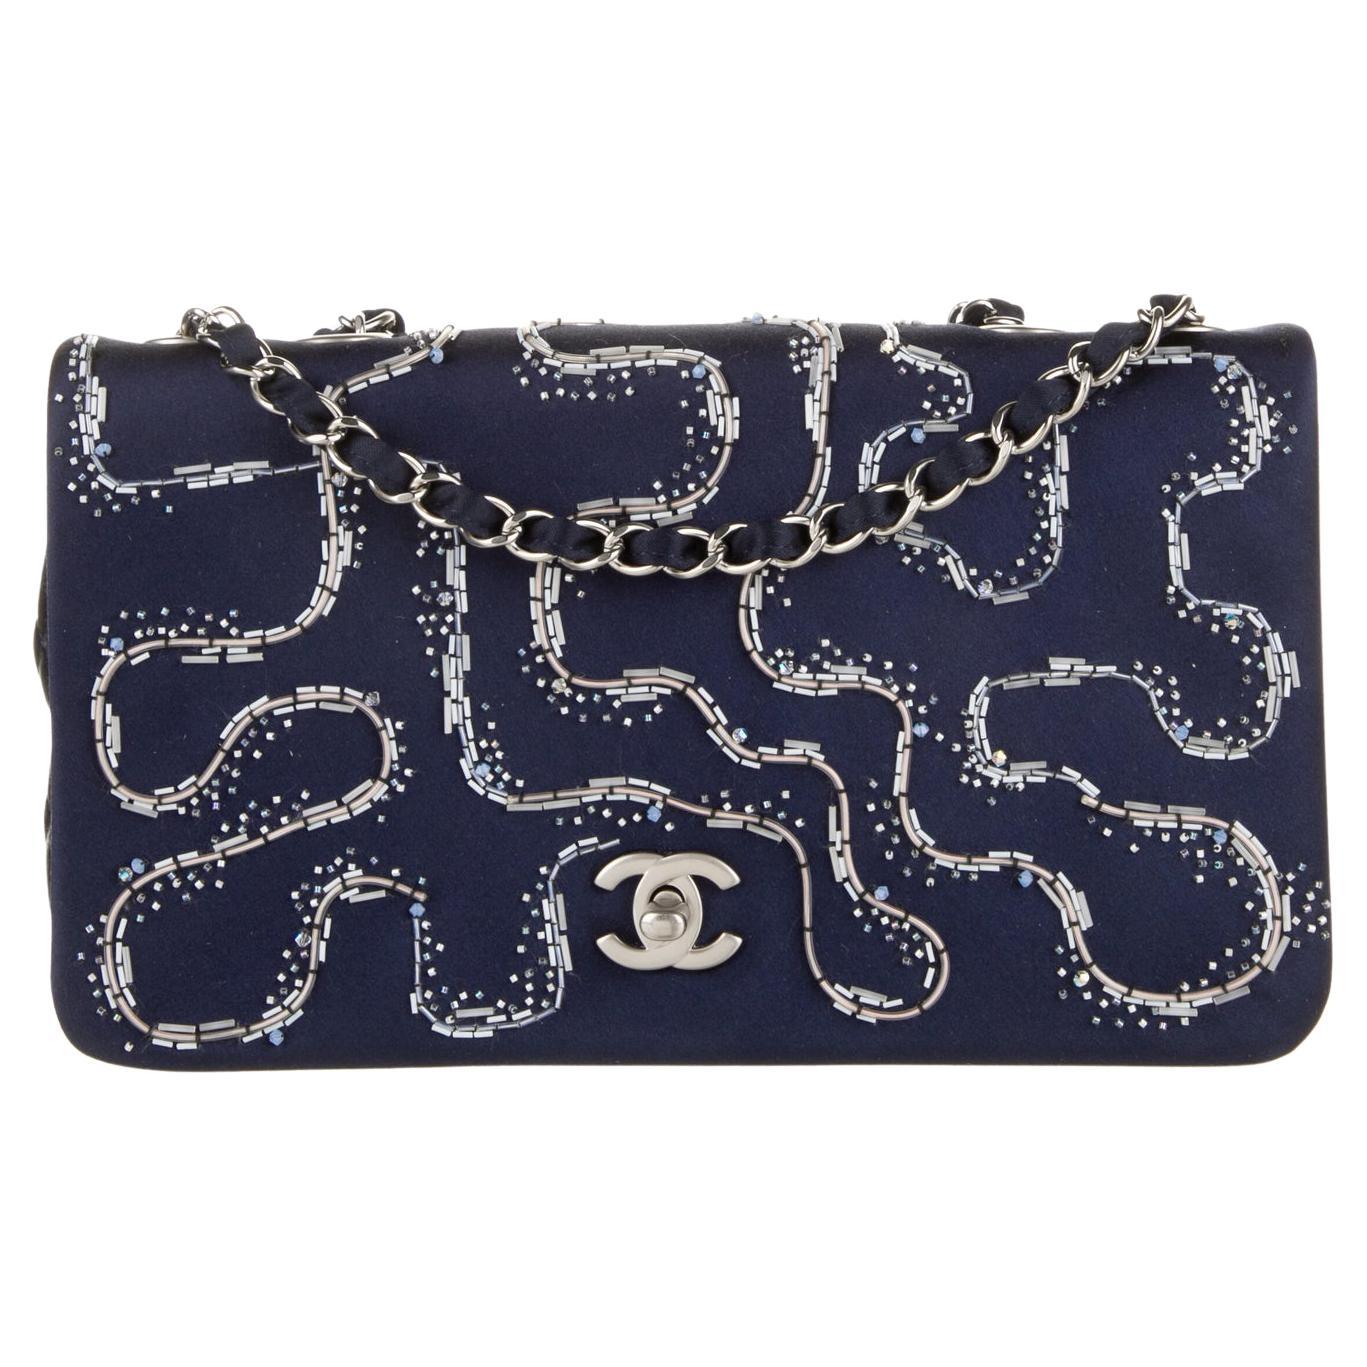 Chanel 2015 Rare Embellished Satin Blue Illuminating Medium Classic Flap Bag